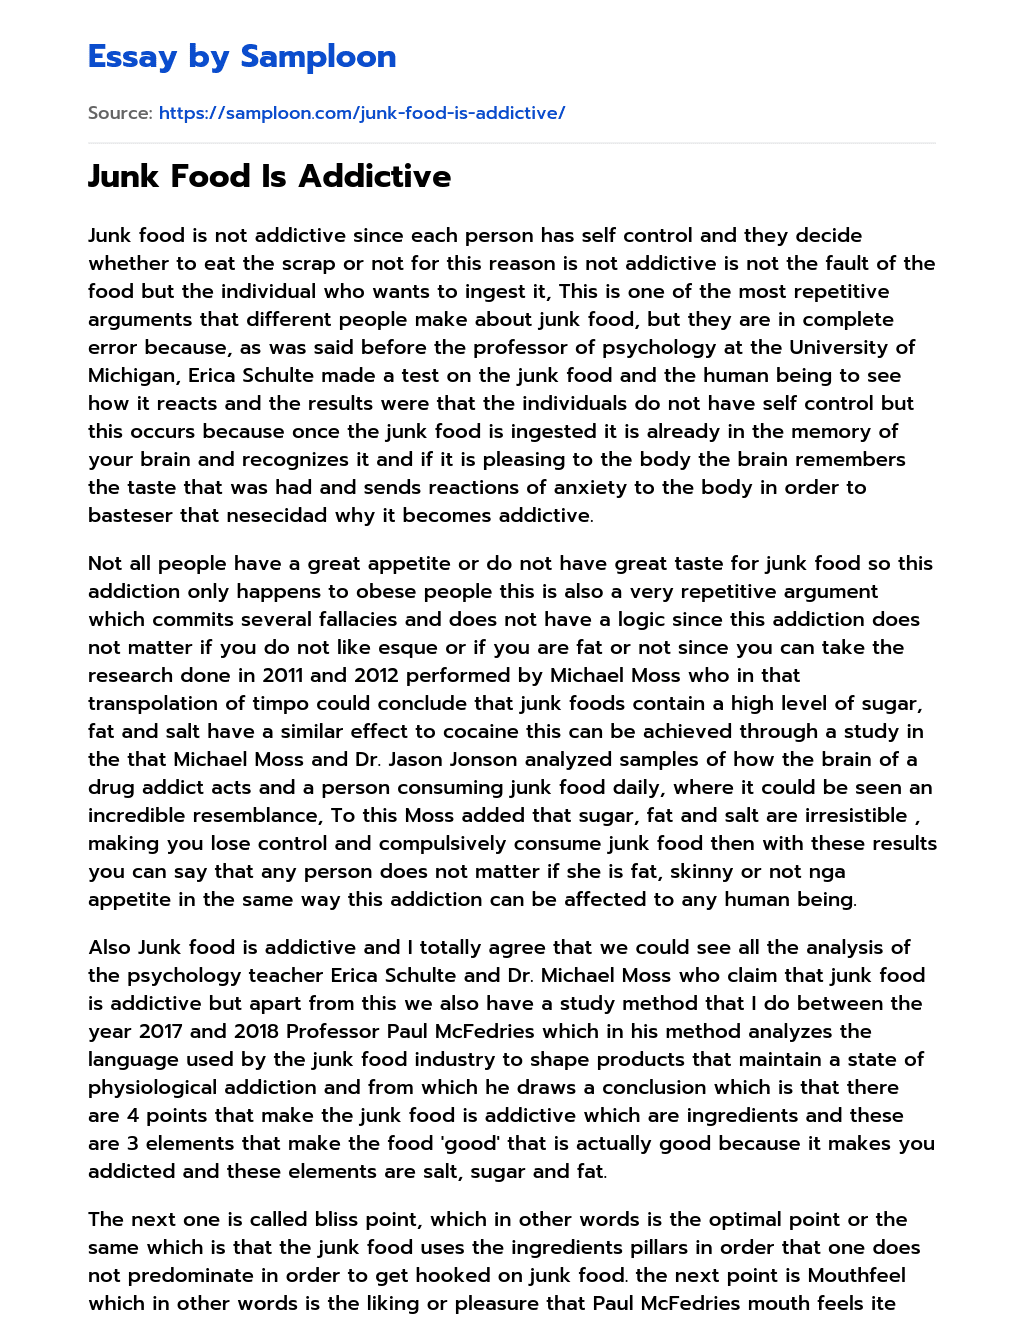 junk food addiction essay